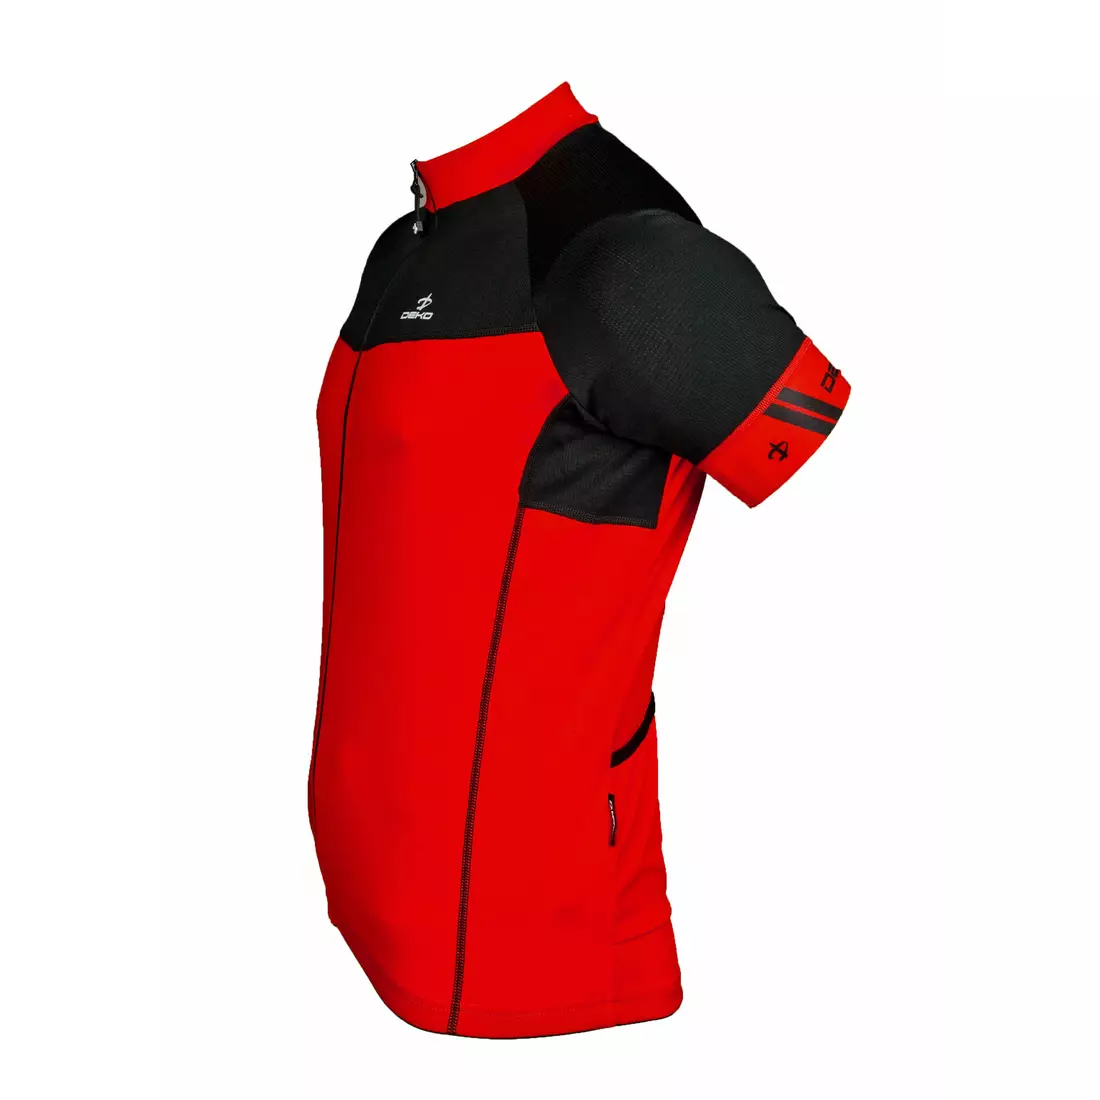 Pánský cyklistický dres DEKO FORZA, červeno-černý